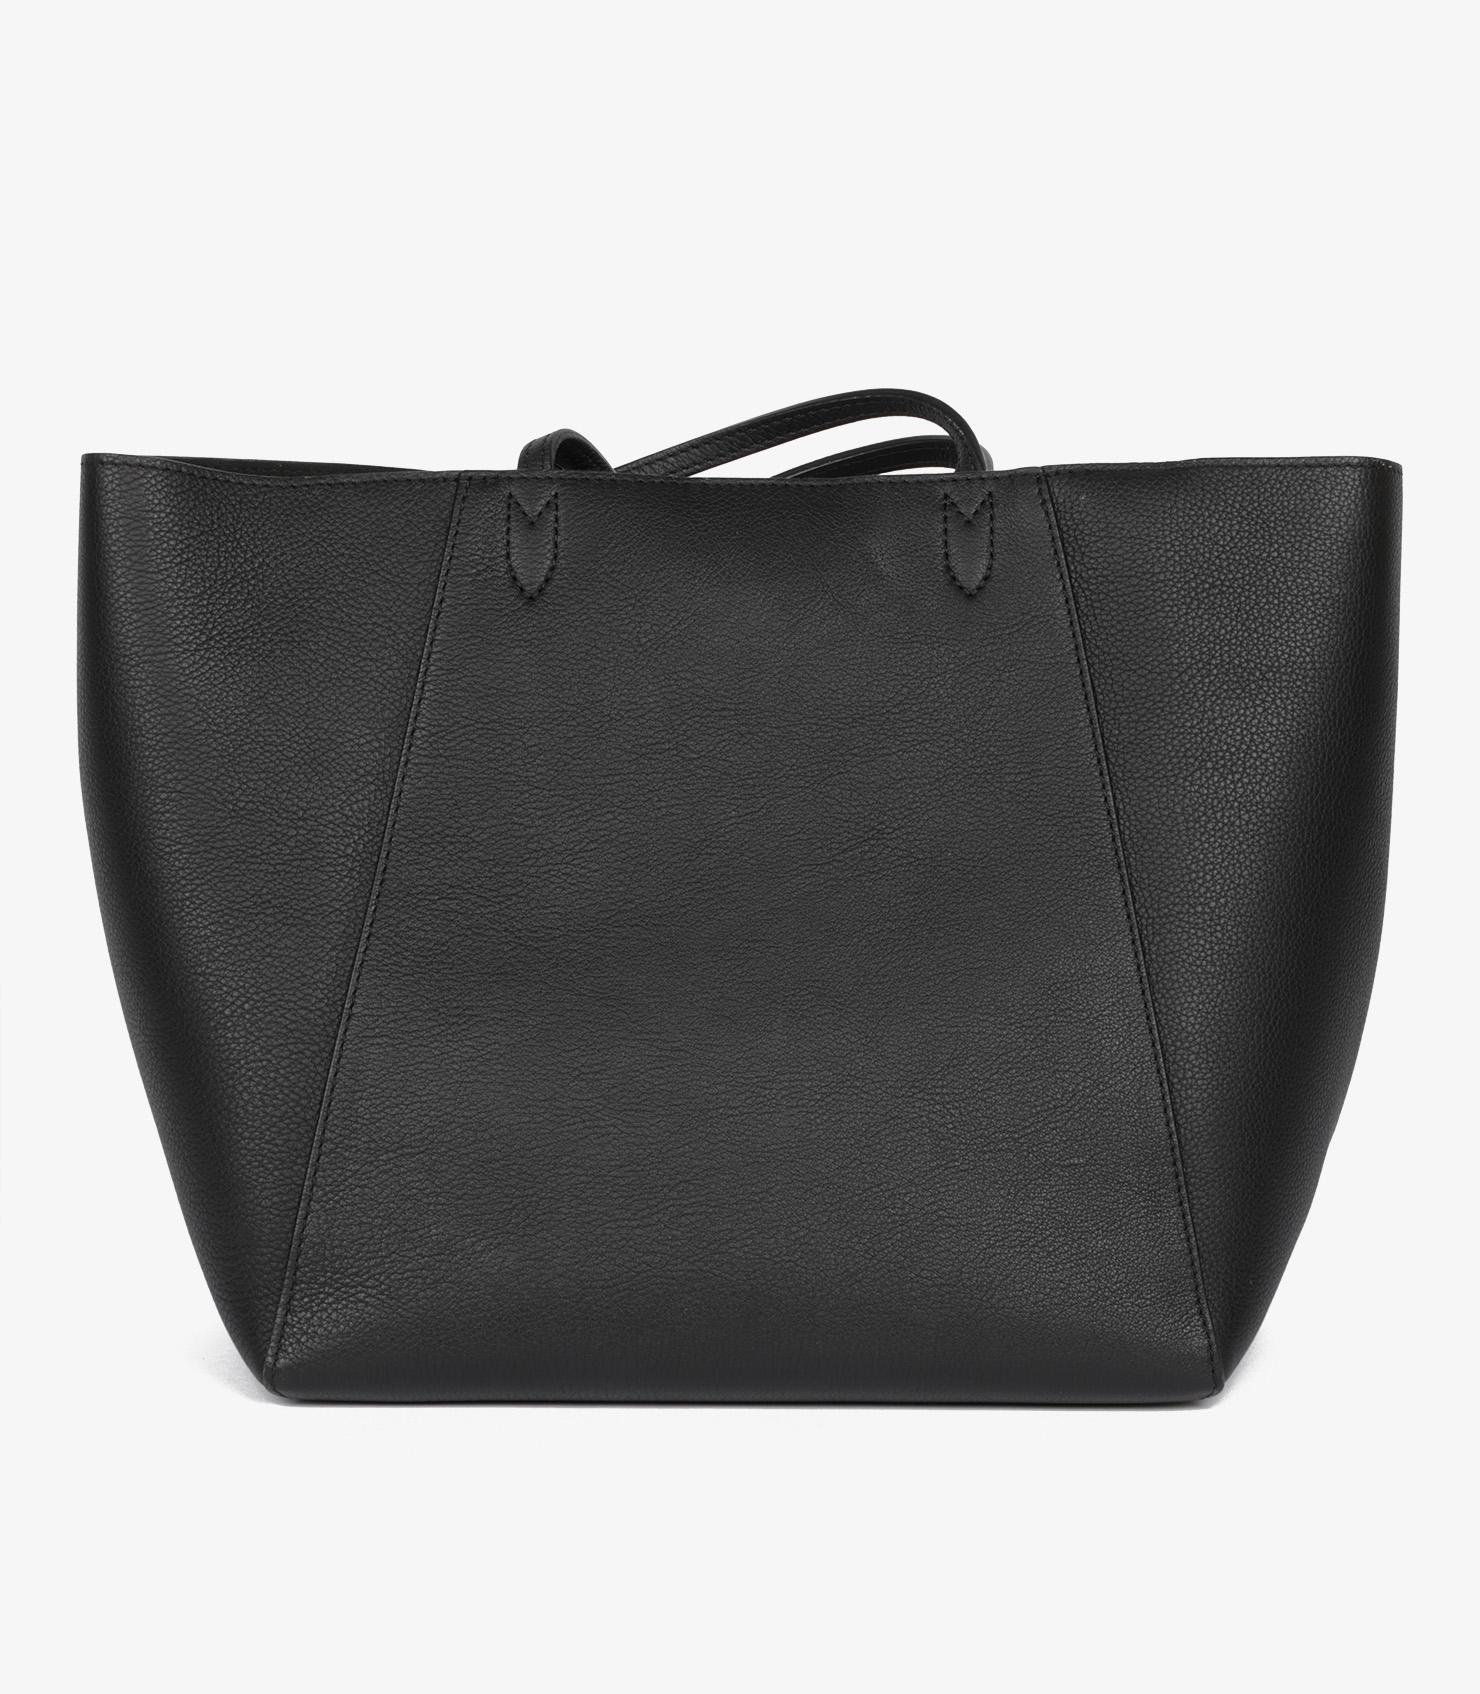 Louis Vuitton Black Grained Calfskin Leather Lockme Shopper Bag For Sale 2